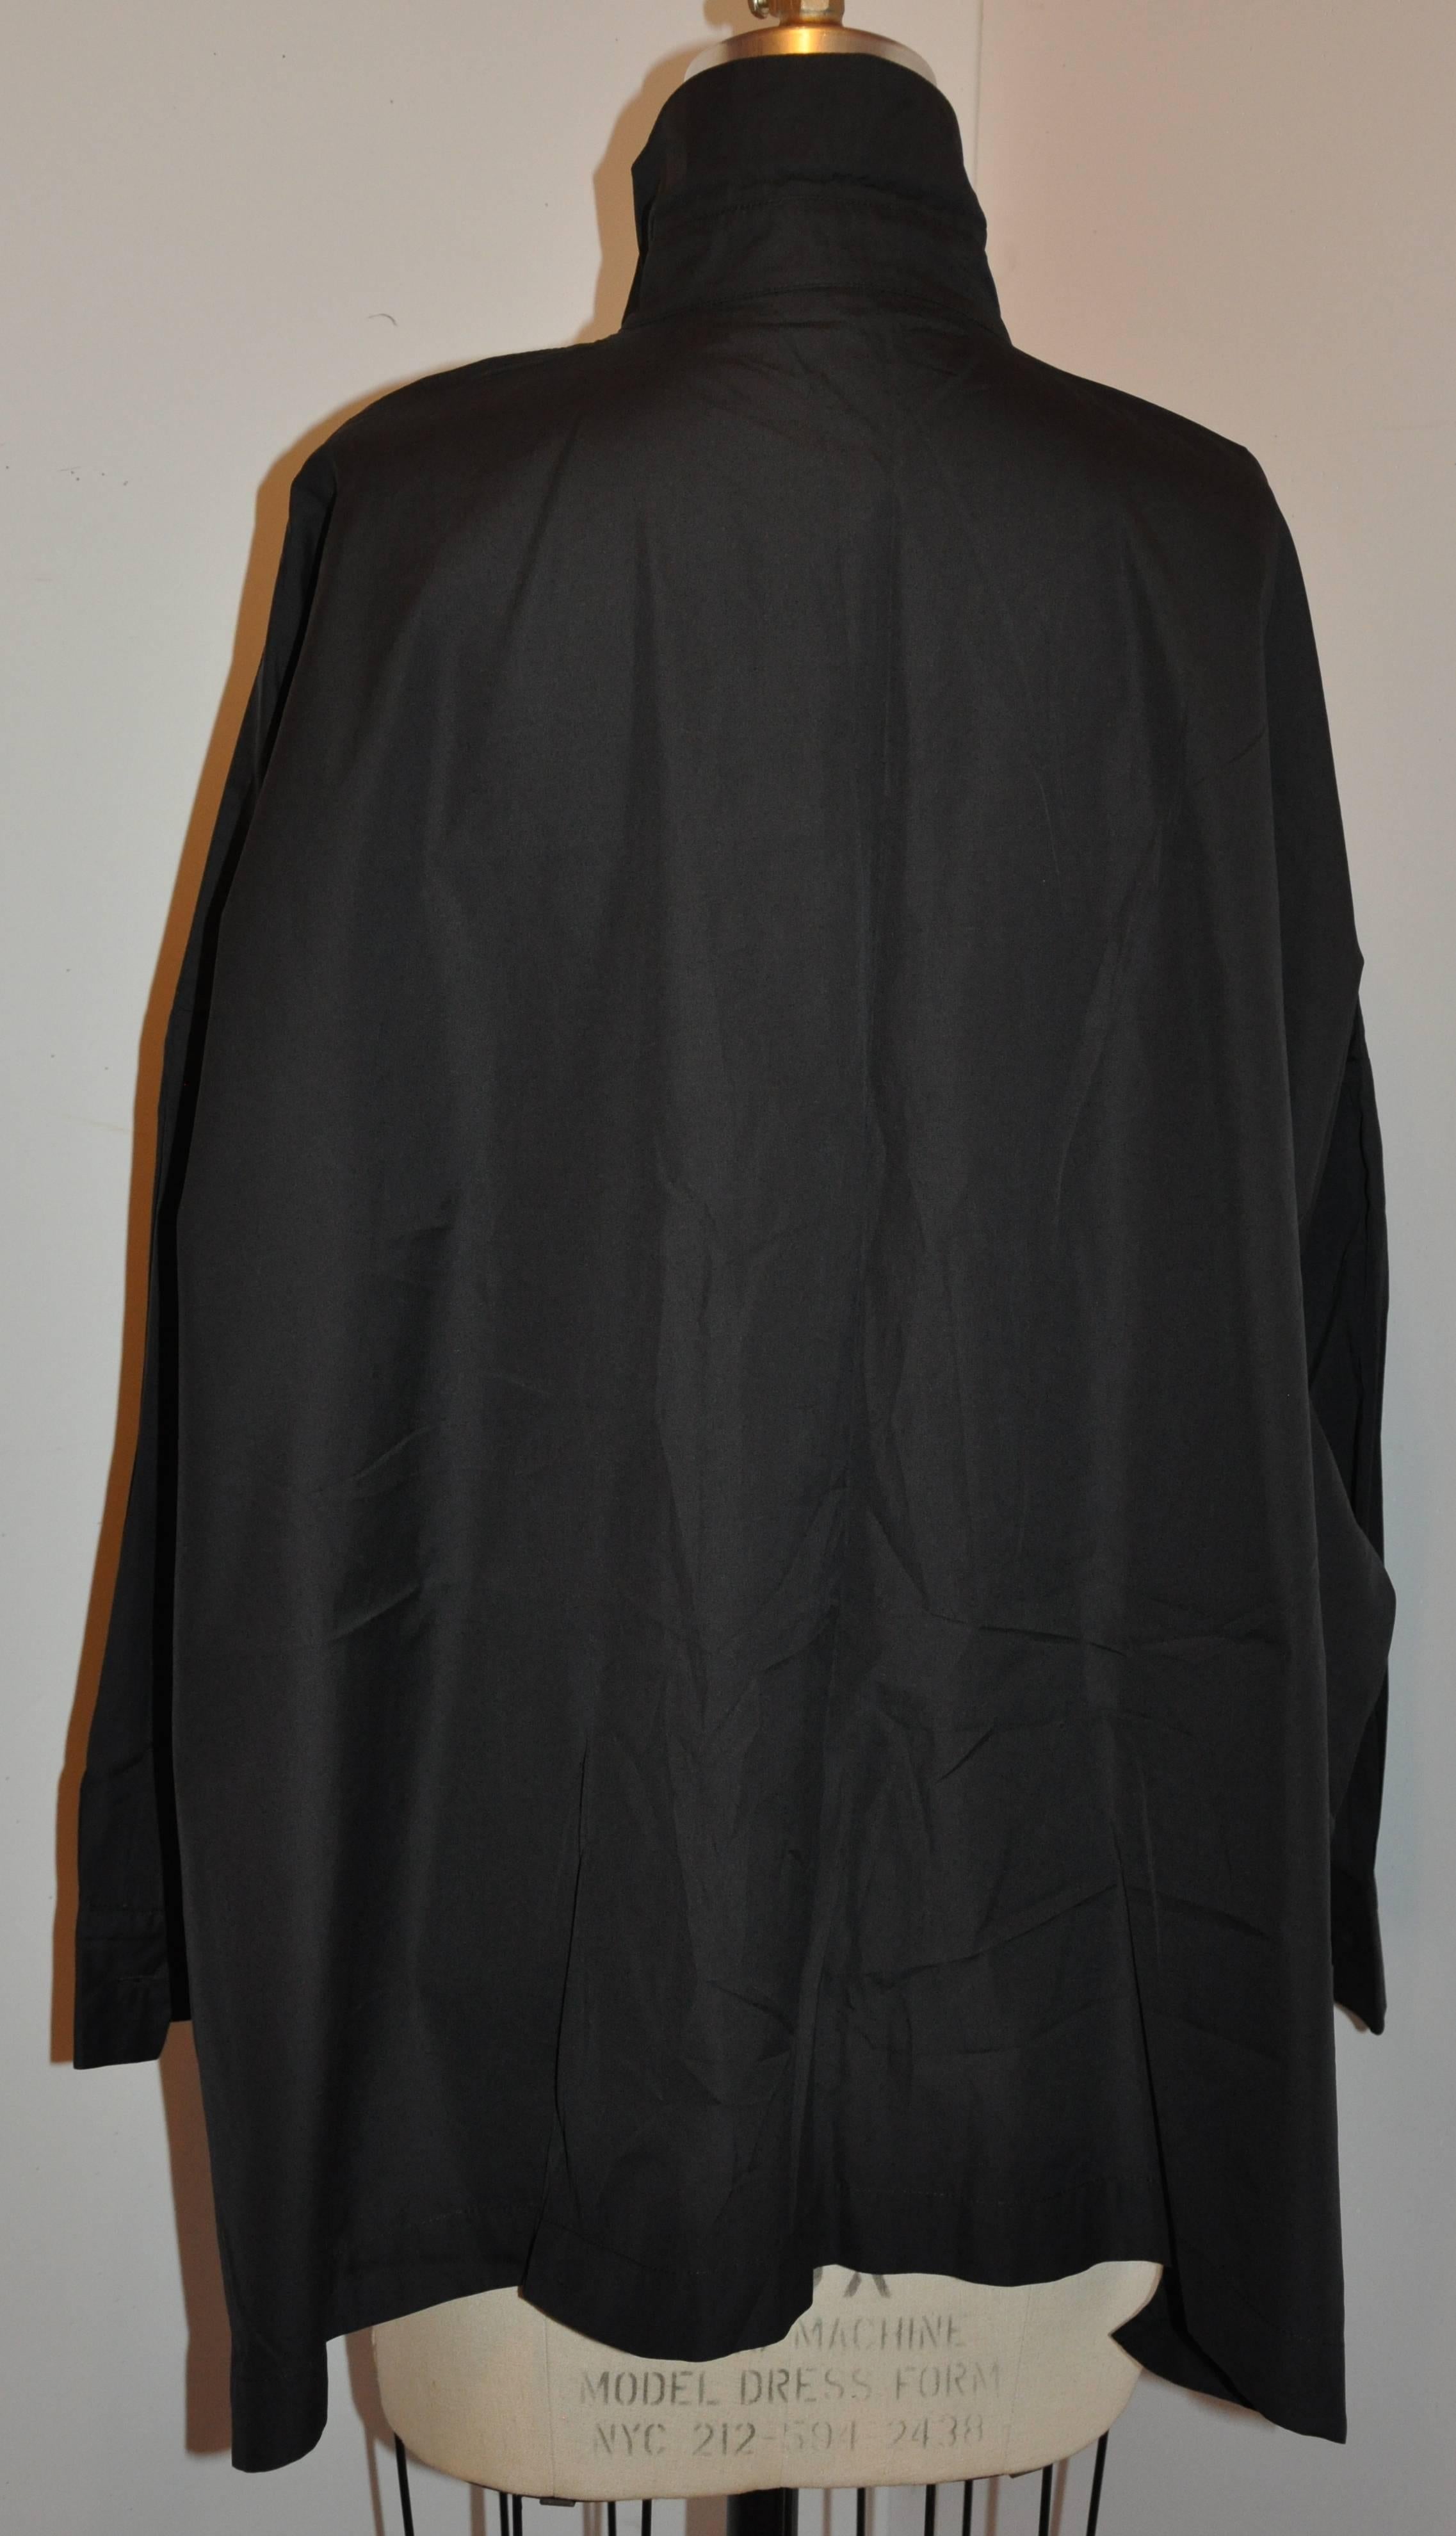         Die schwarze Oversize-Jacke von Eskandar für Bergdorf Goodman aus Baumwolle im Smock-Stil hat zwei aufgesetzte Taschen auf der Vorderseite. Die Vorderseite hat sechs Knöpfe in passendem Schwarz. Die Seiten sind geschlitzt.
        Die